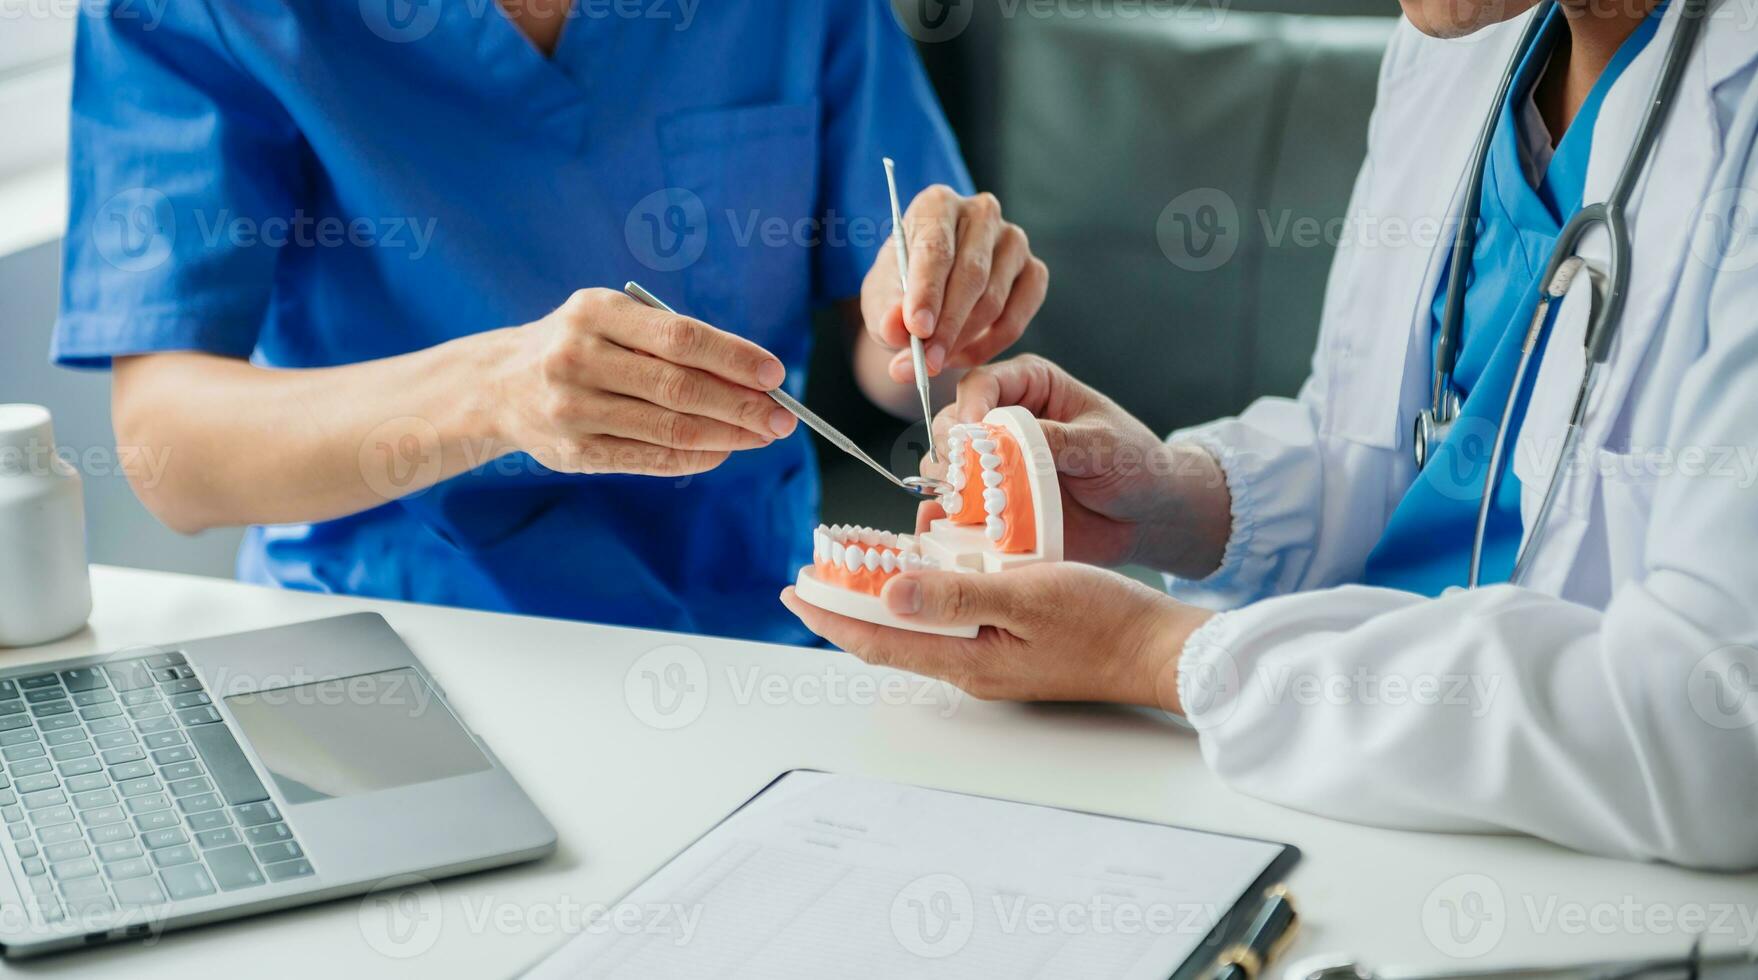 tandläkare Sammanträde på tabell med käke prover tand modell och arbetssätt med läsplatta och bärbar dator i dental kontor professionell dental klinik. medicinsk läkare arbetssätt foto